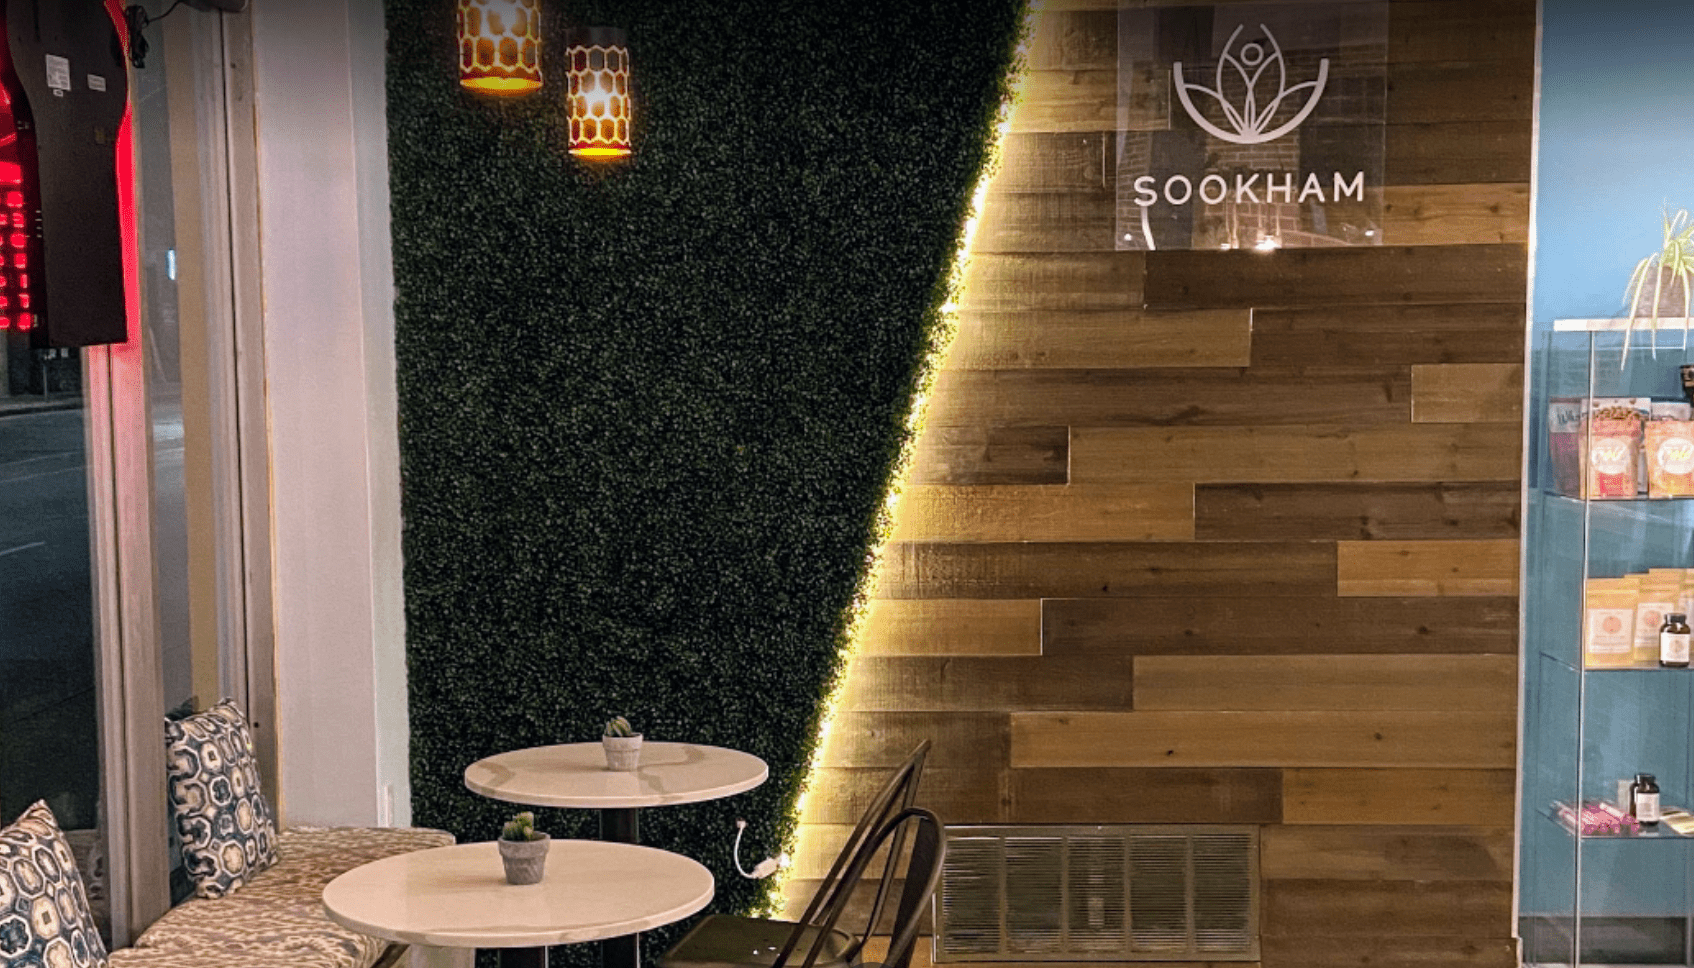 Sookham Restaurant